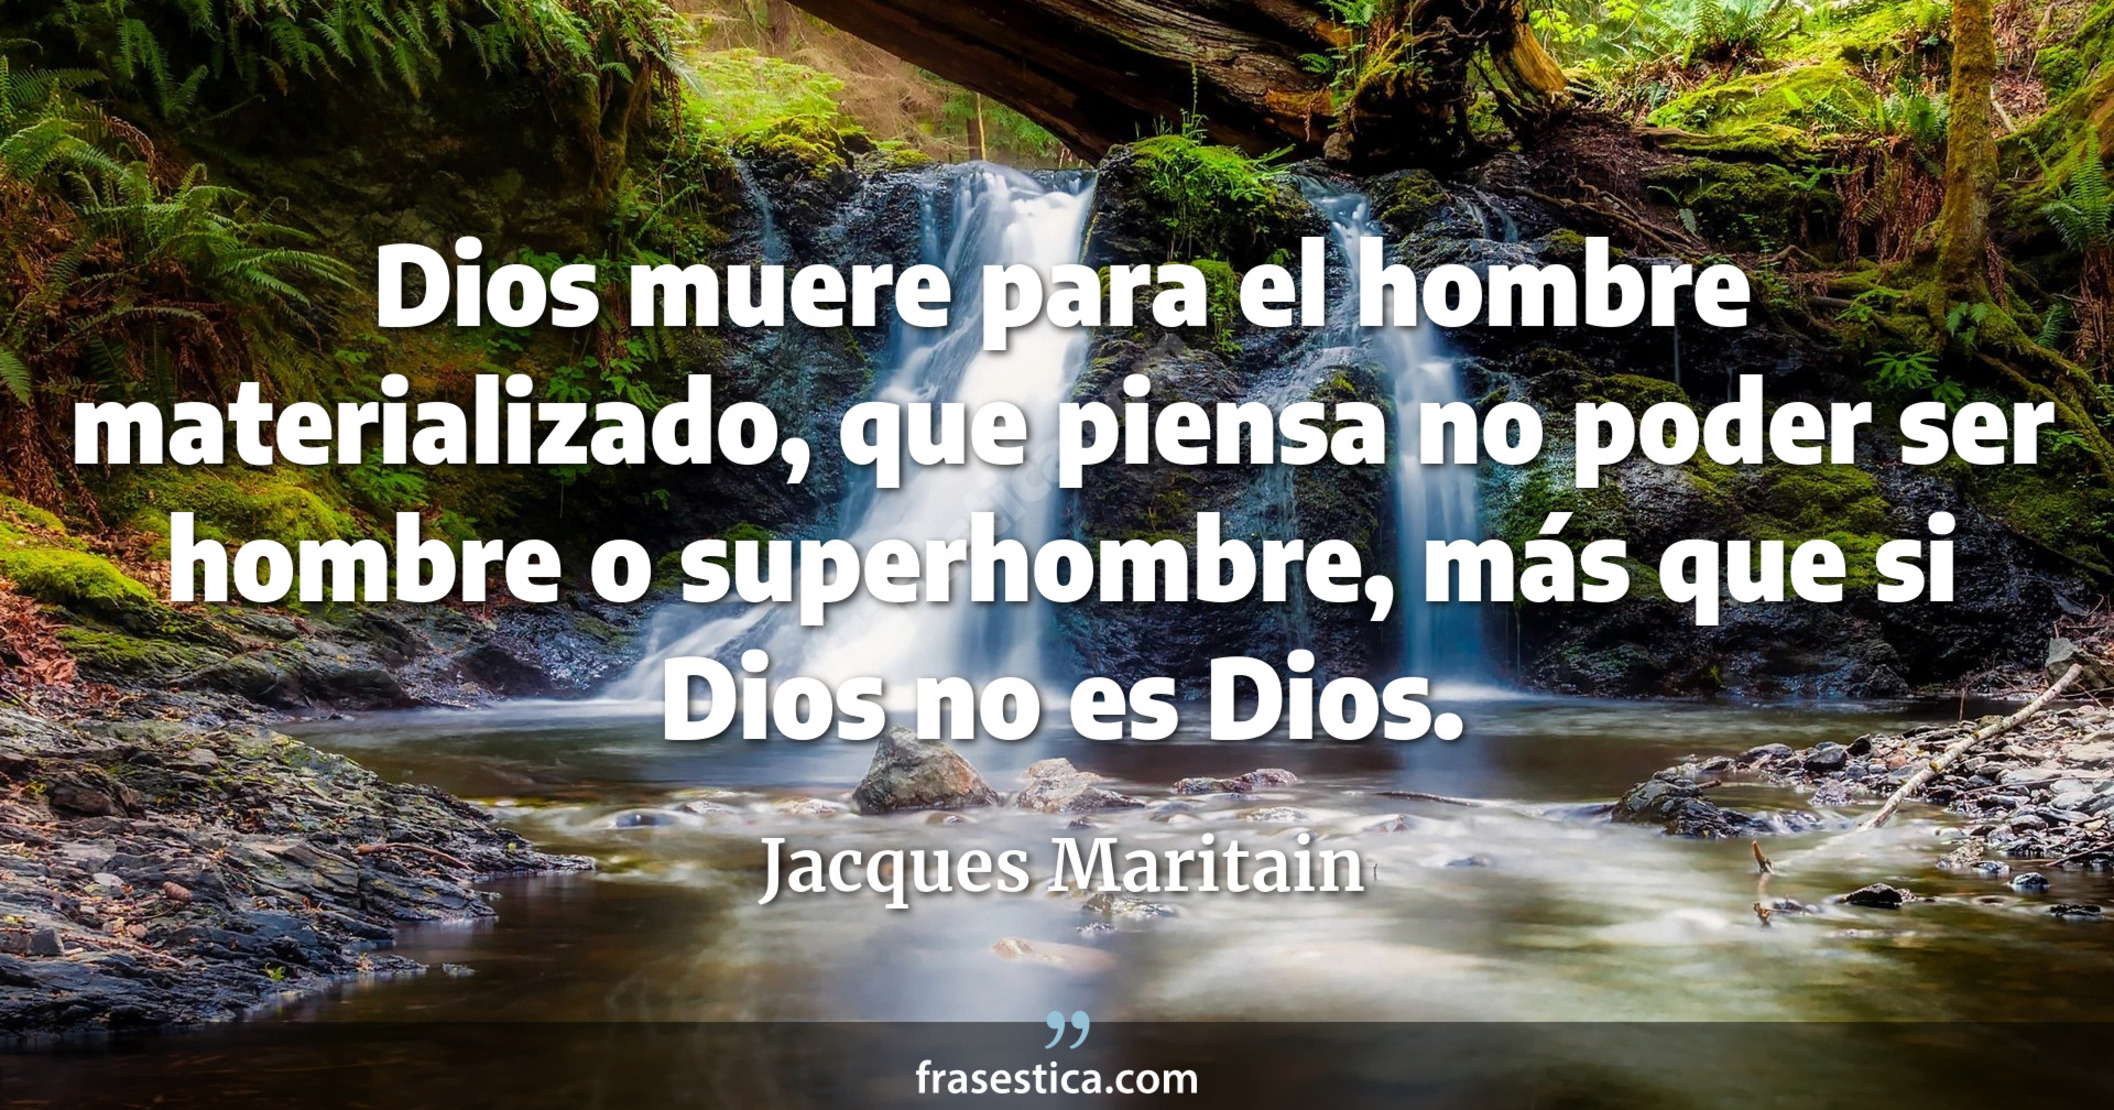 Dios muere para el hombre materializado, que piensa no poder ser hombre o superhombre, más que si Dios no es Dios. - Jacques Maritain